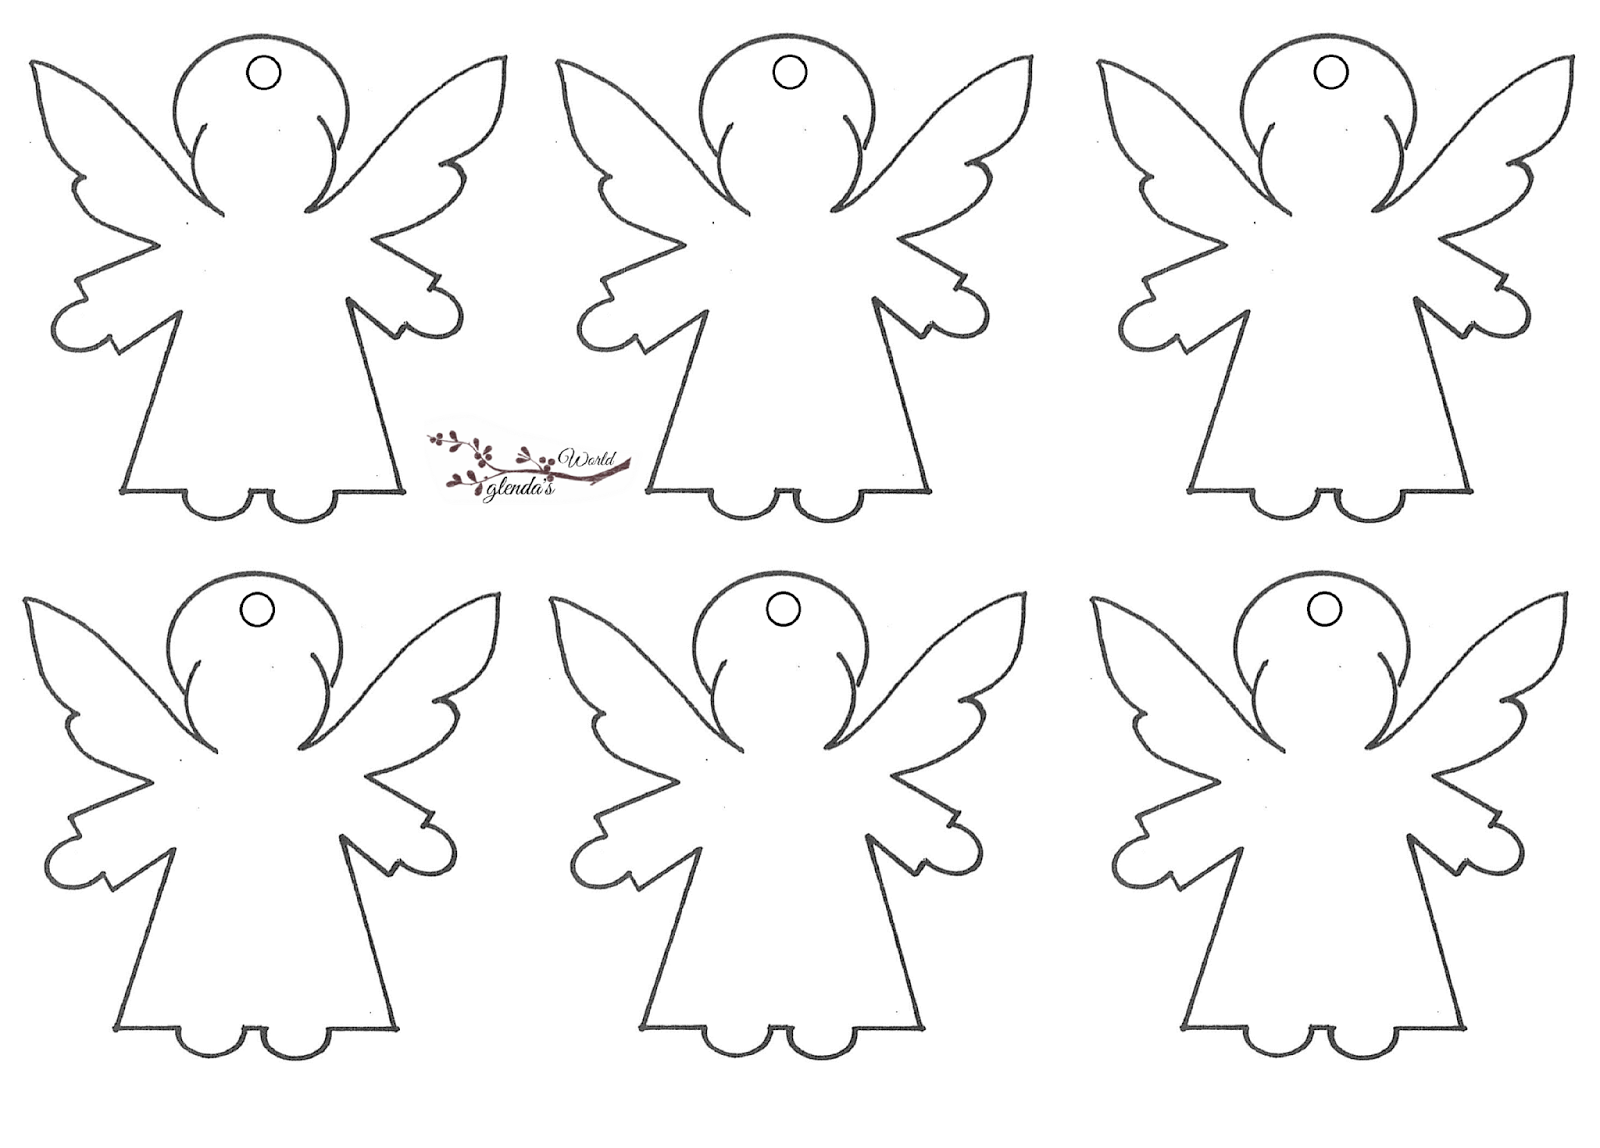 Как сделать ангелочка своими руками: шаблон для вырезания и варианты исполнения из пенопласта и из пластилина